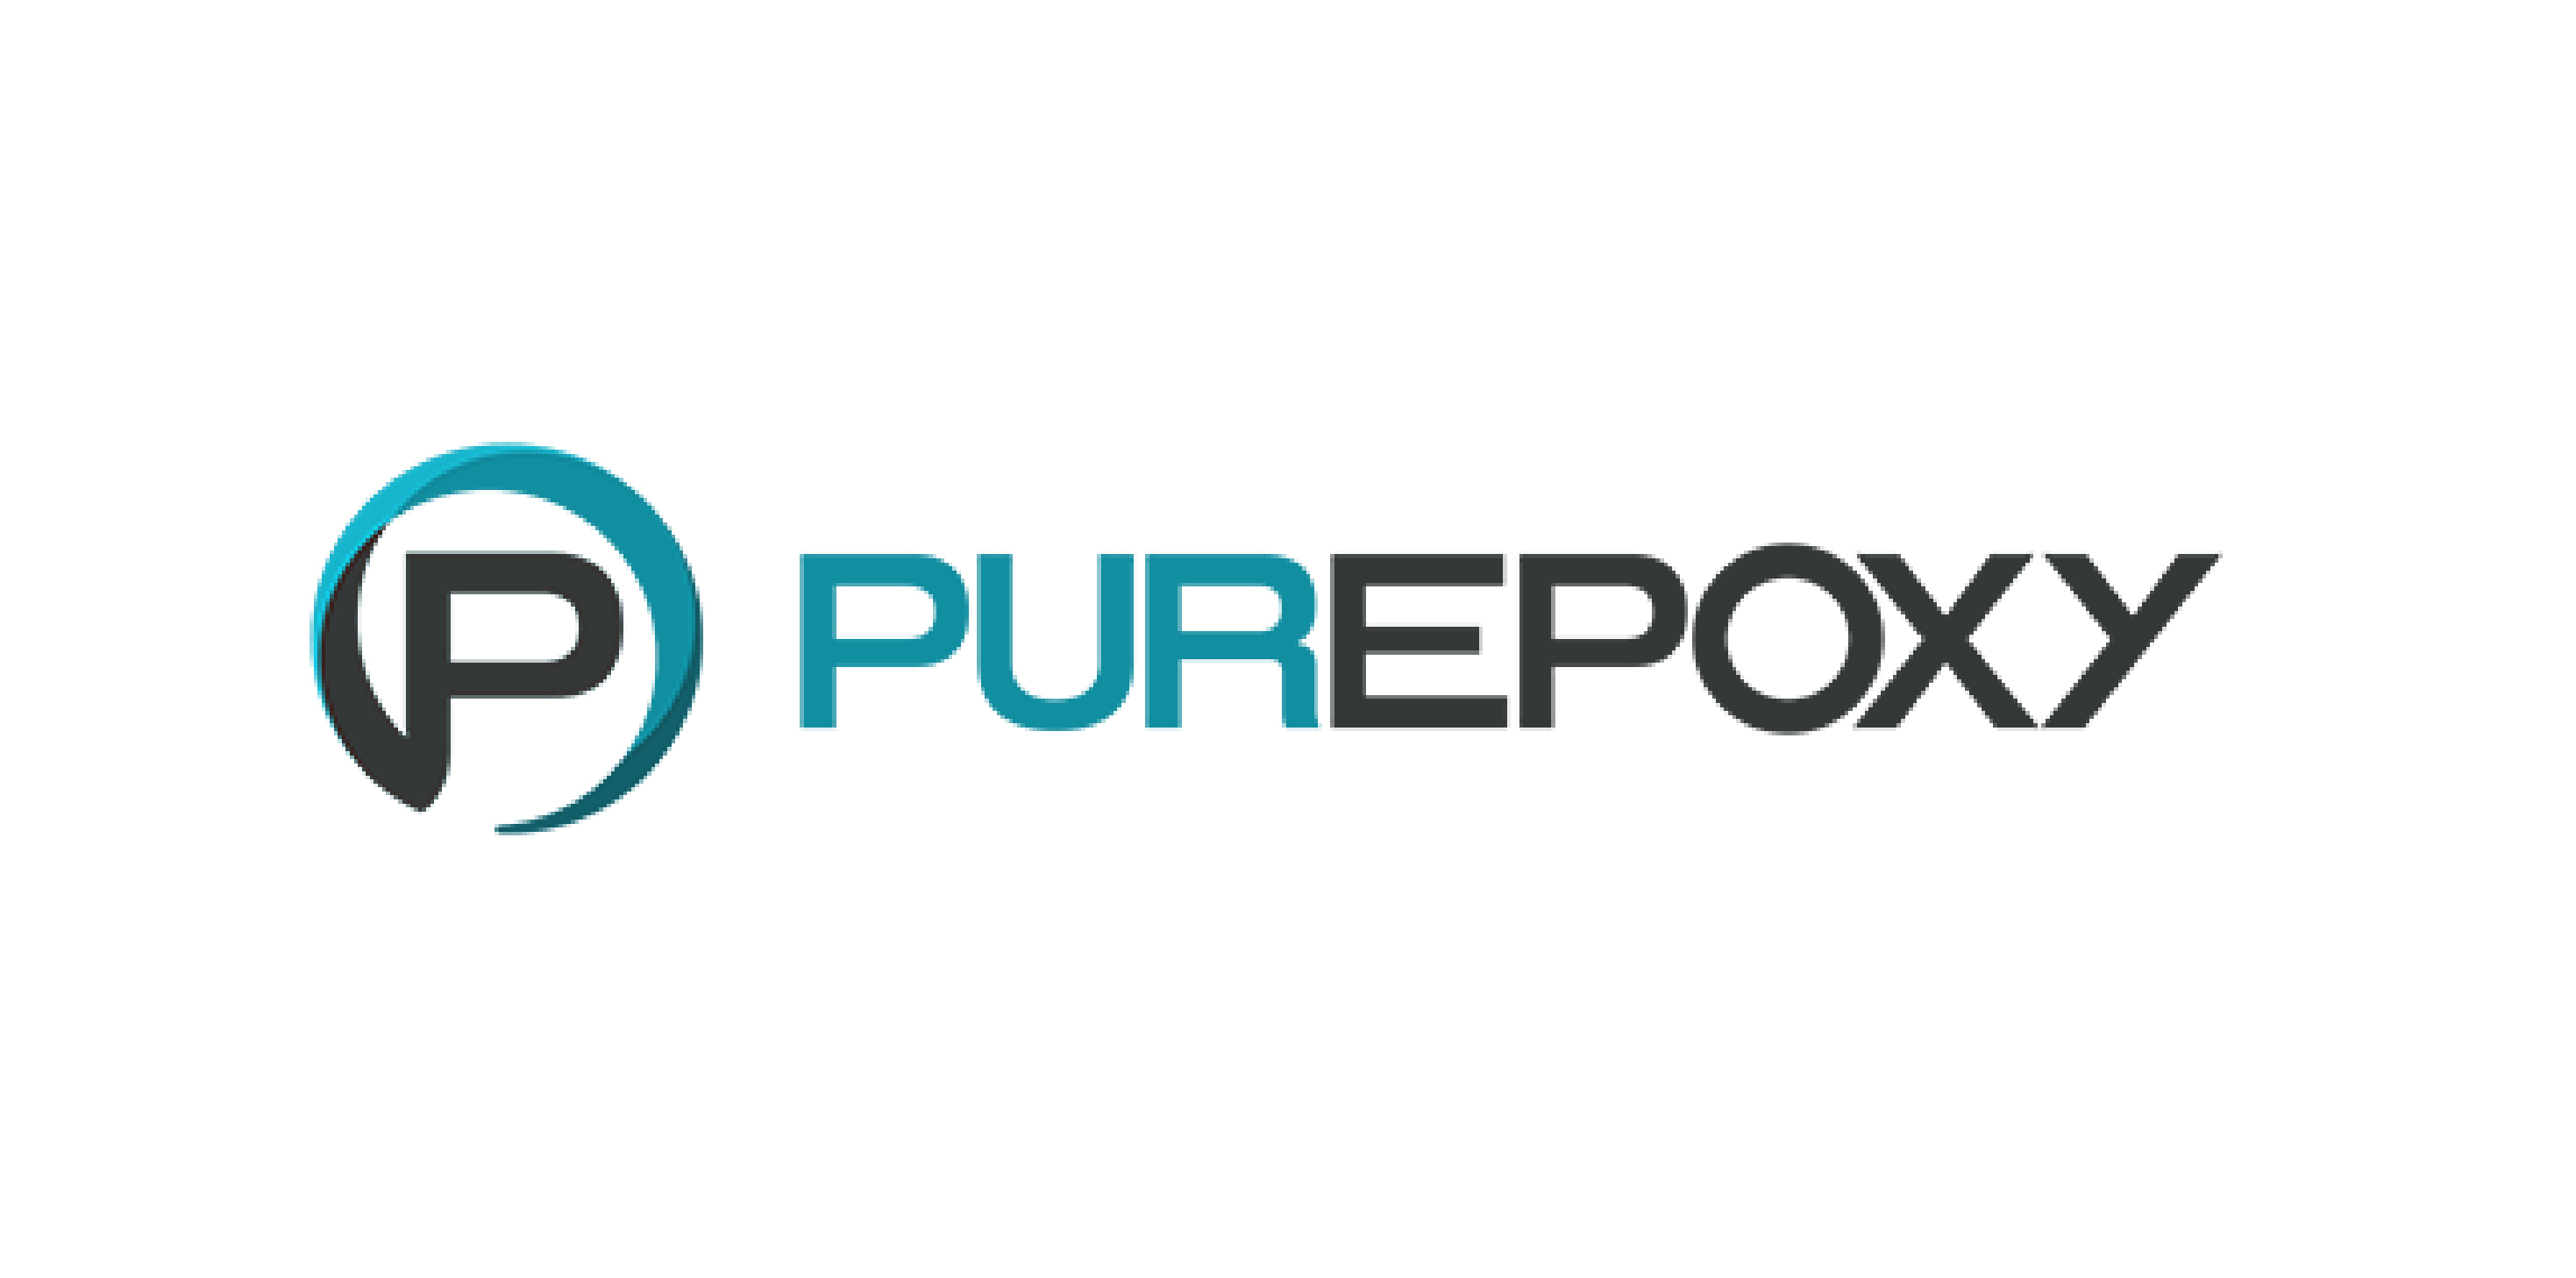 Purepoxy